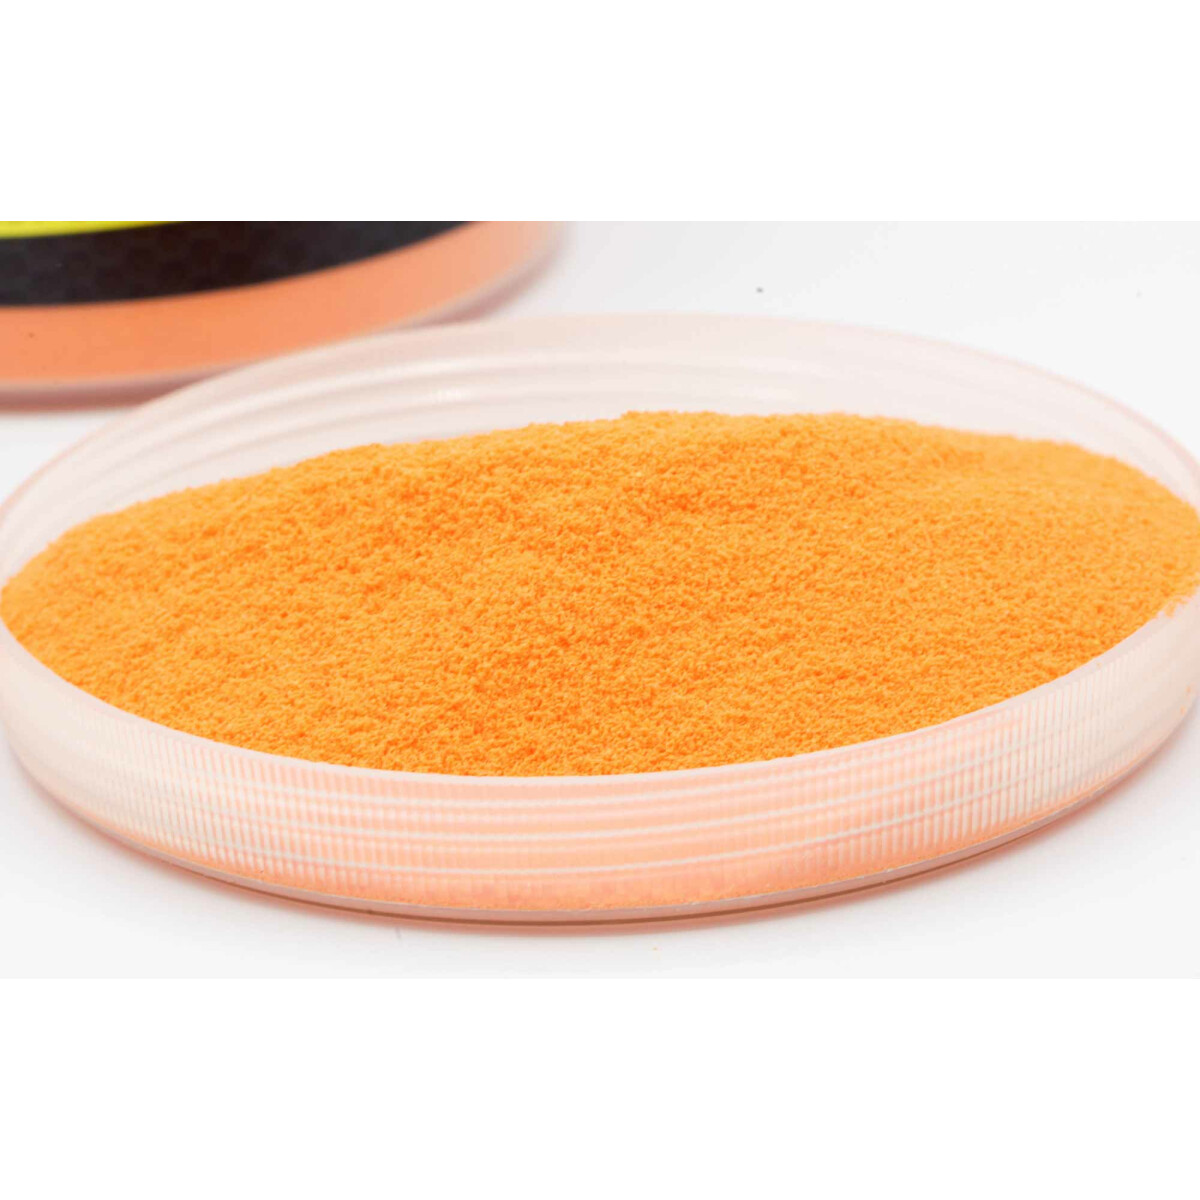 Carpleads Powder Coating - Orange 500 g